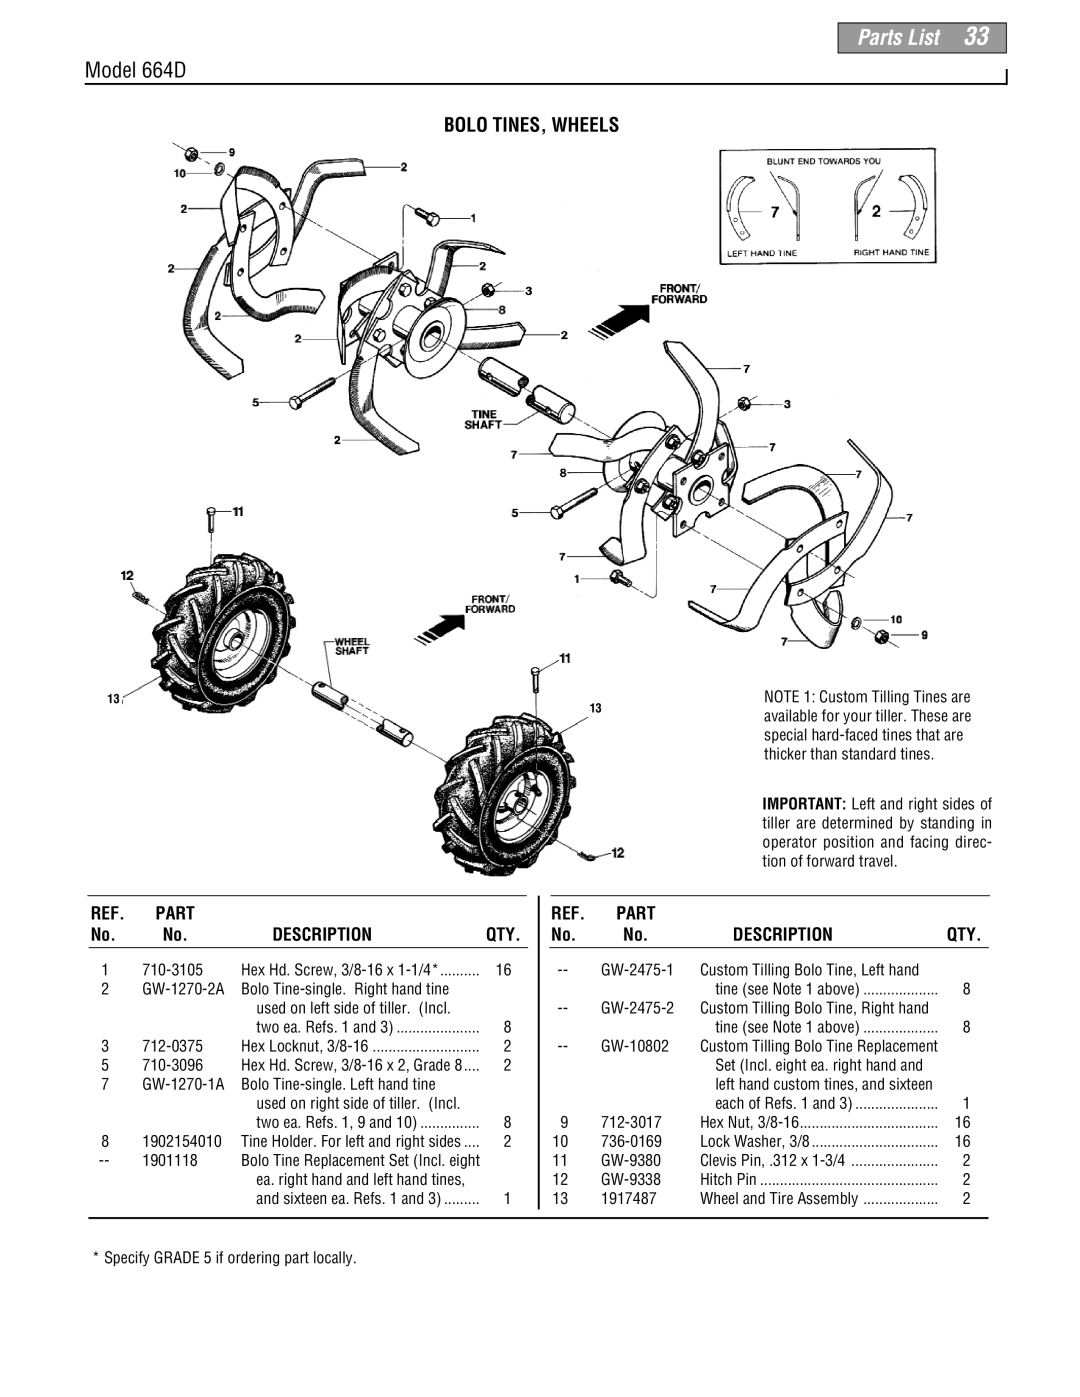 Troy-Bilt 664D-Pony manual Bolo Tines, Wheels, Parts List, Model 664D, Description 